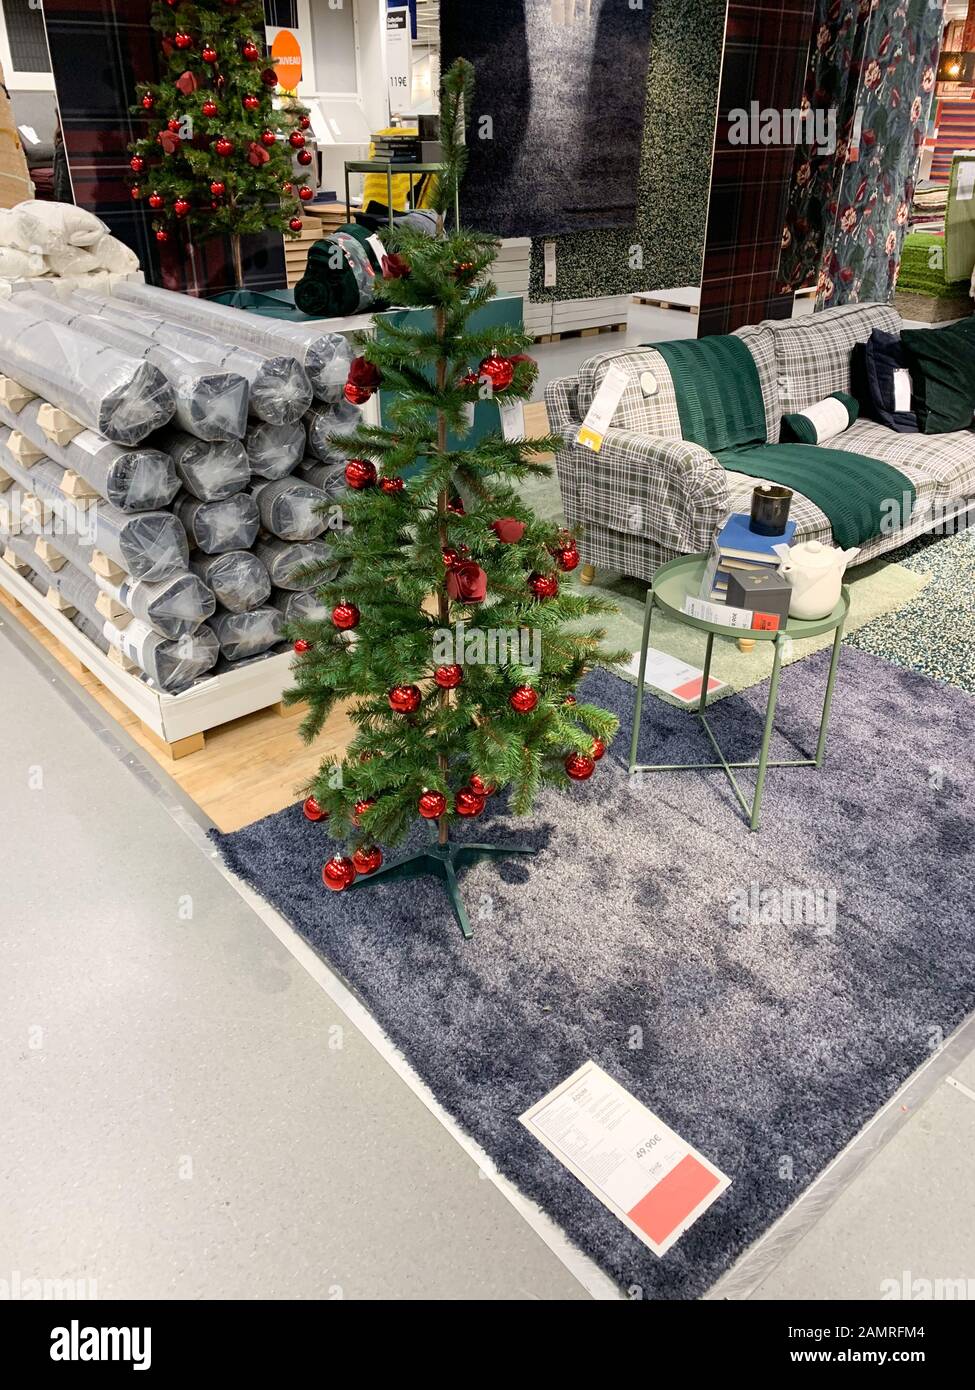 Paris, Frankreich - 1. Dezember 2018: Weihnachtsstimmung im IKEA Möbelhaus  mit Tannenbaum, der mit roten Kugeln und mehreren Teppichen zum Verkauf  dekoriert ist Stockfotografie - Alamy